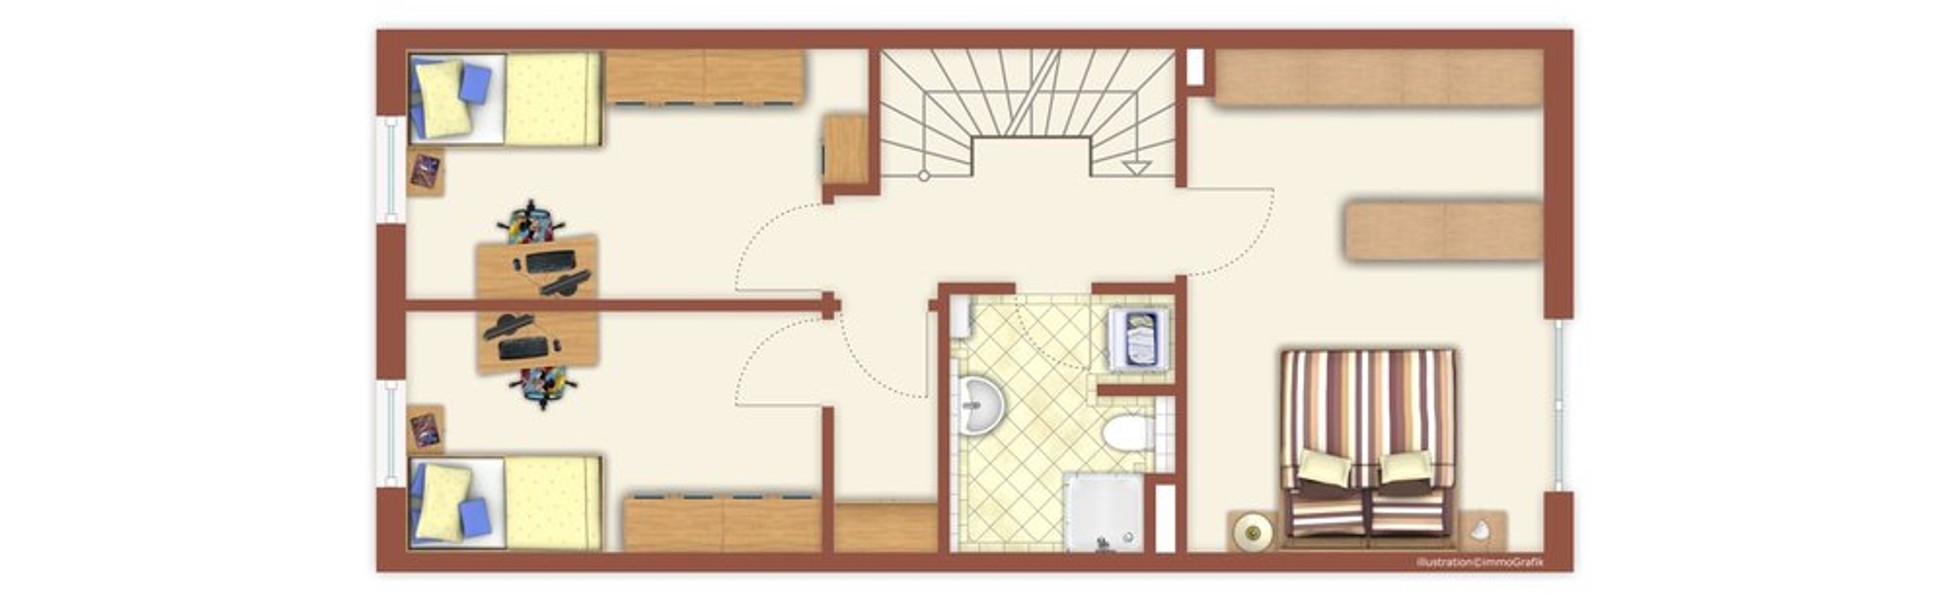 Grundriss OG - Attraktive Maisonettewohnung mit Terrasse und Garten - ideal für eine kleine Familie